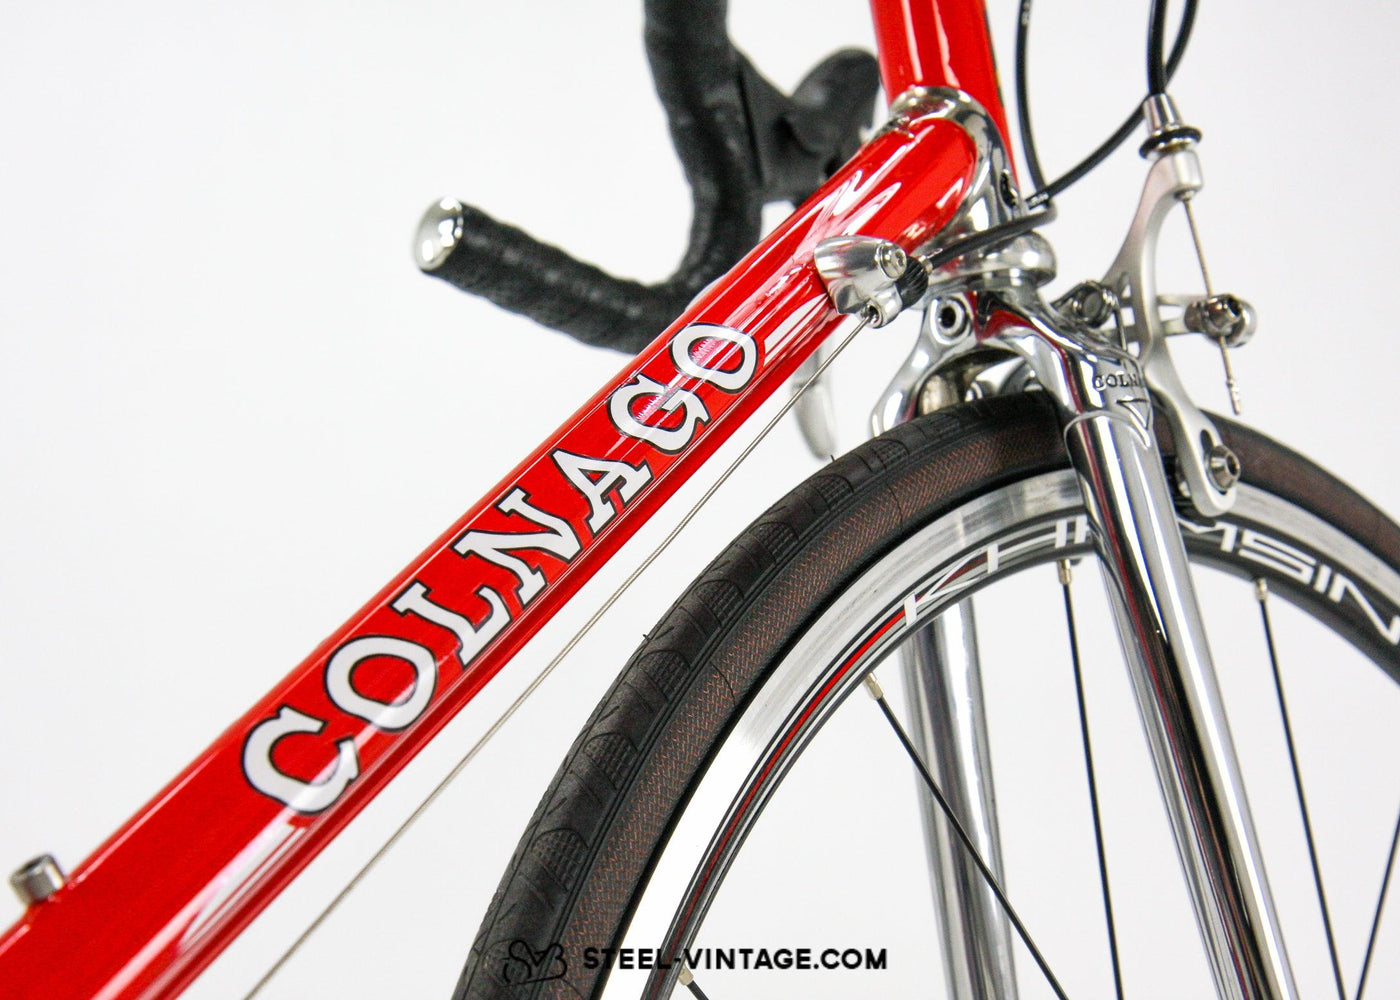 Colnago Master Piu Postmodern Road Bicycle - Steel Vintage Bikes